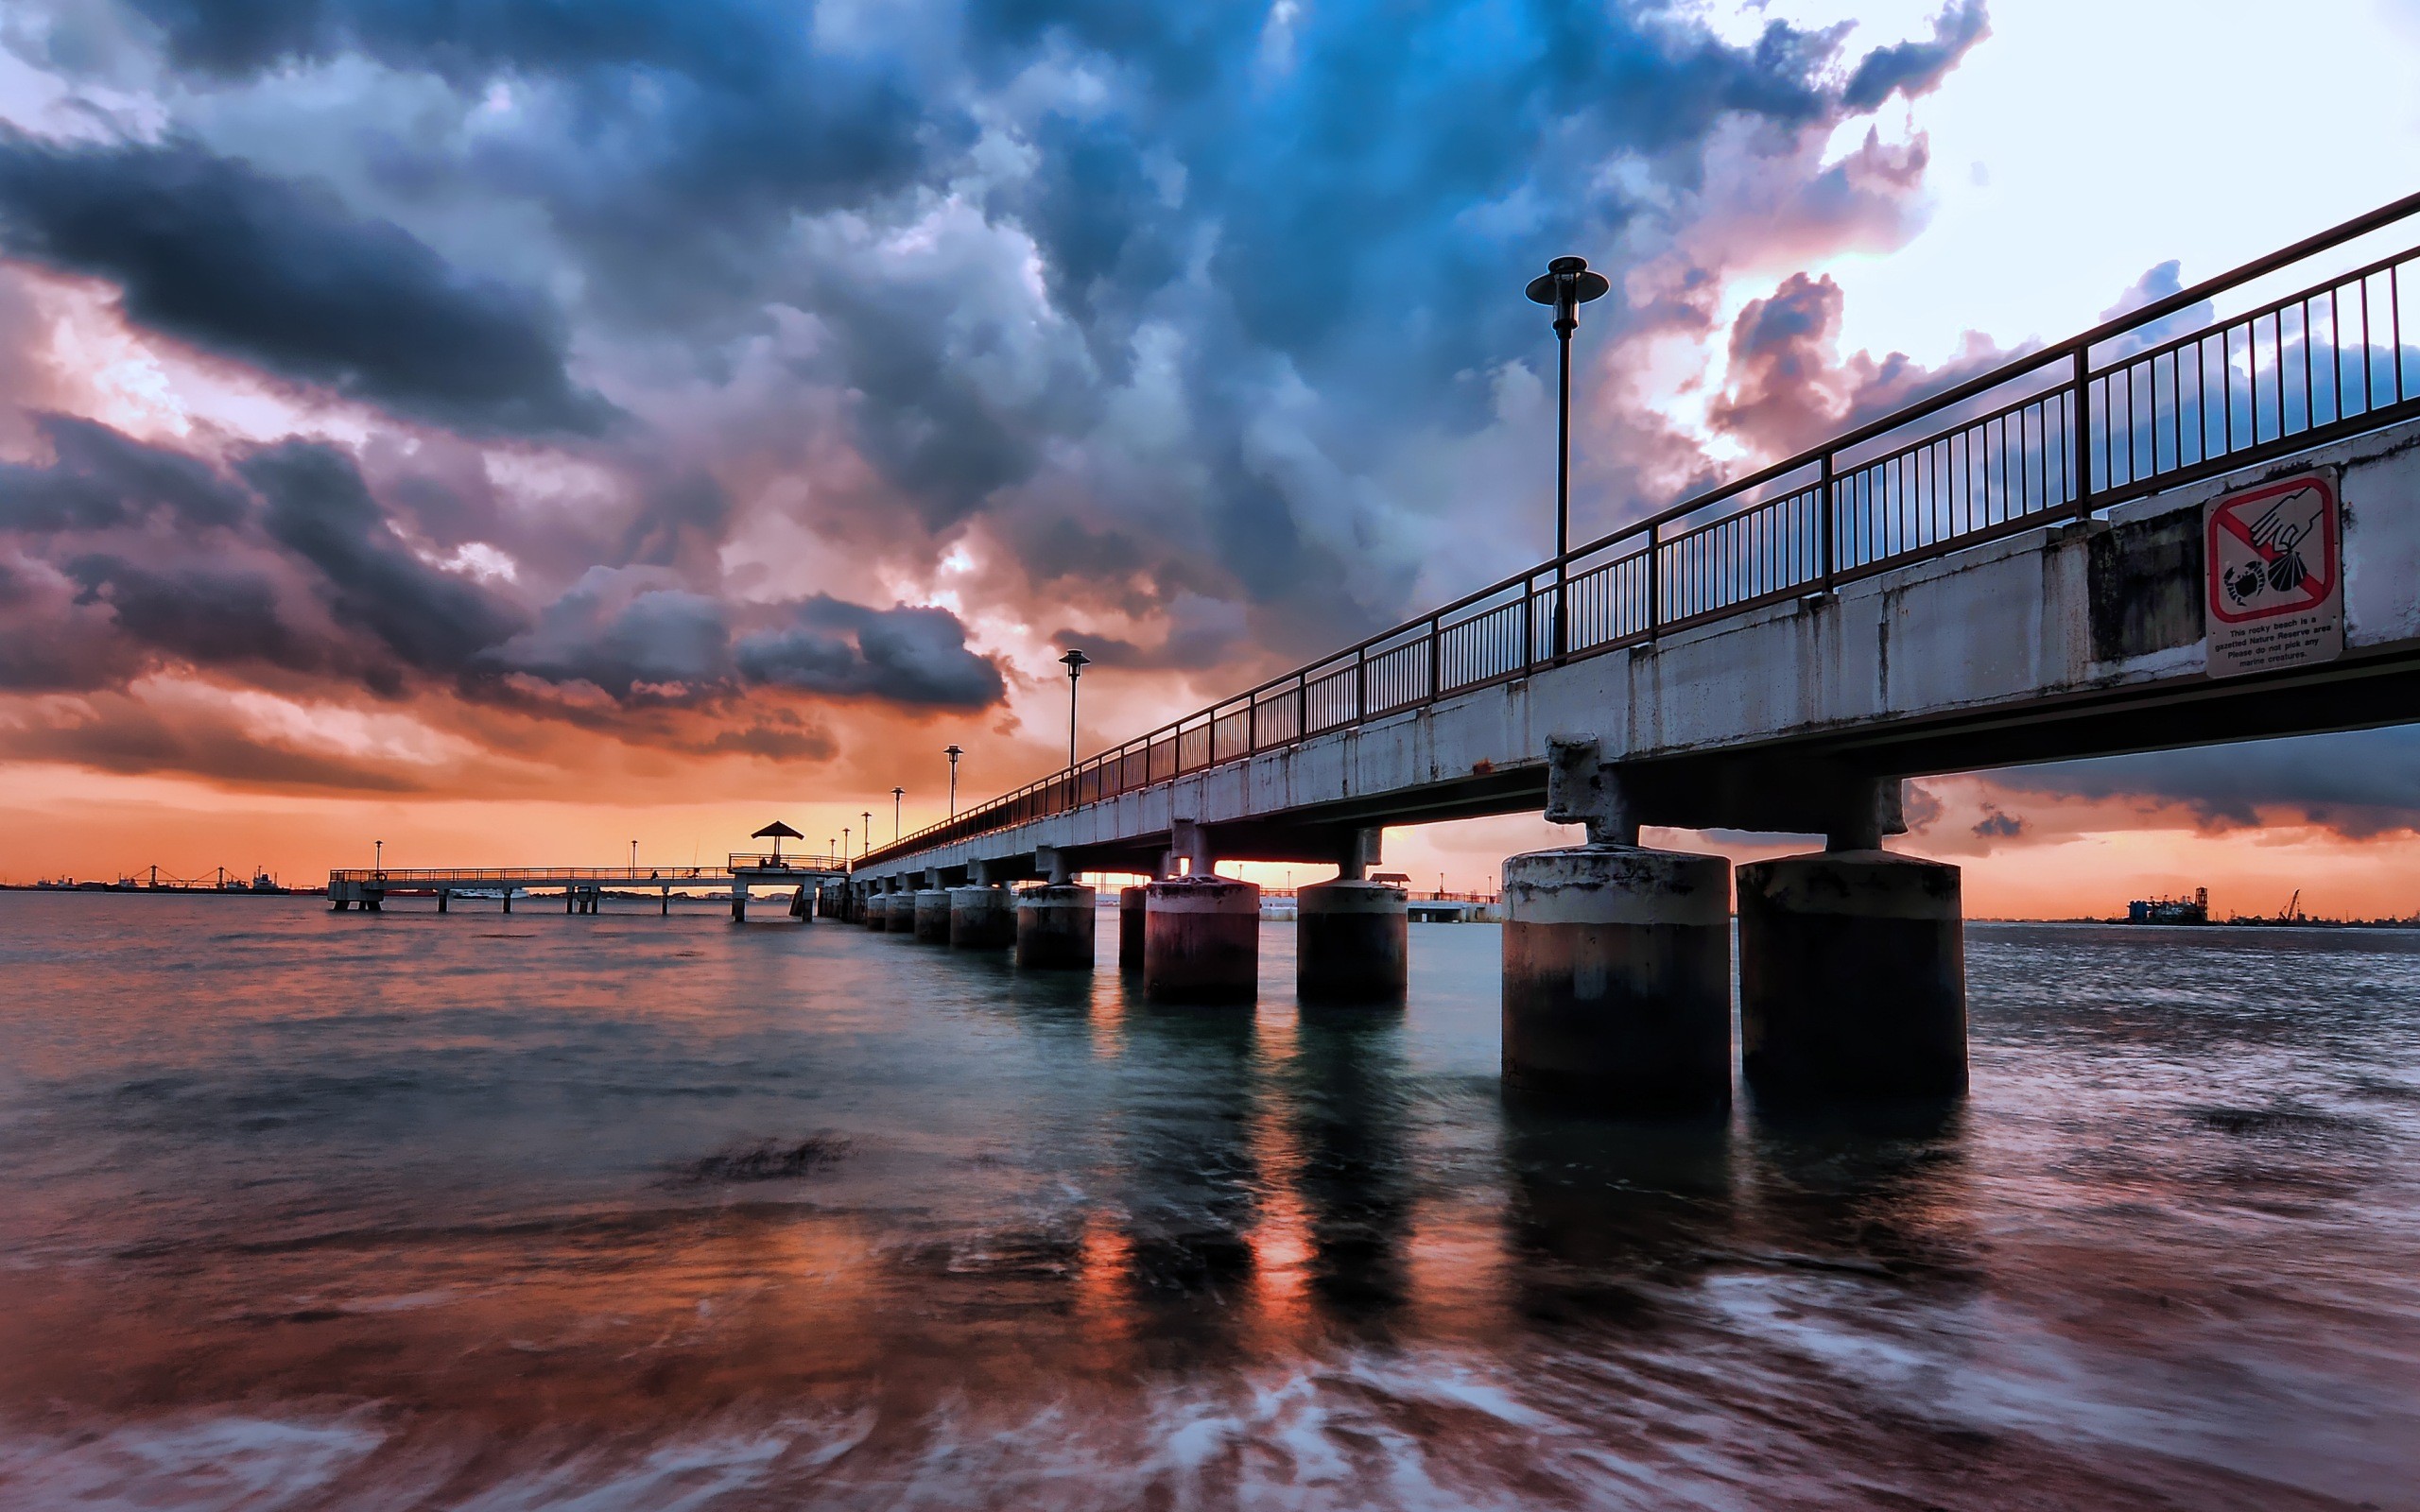 Обои разрешение 1920. Йокогама Пирс. Красивые виды мостов. Мост над морем. Мост в море.